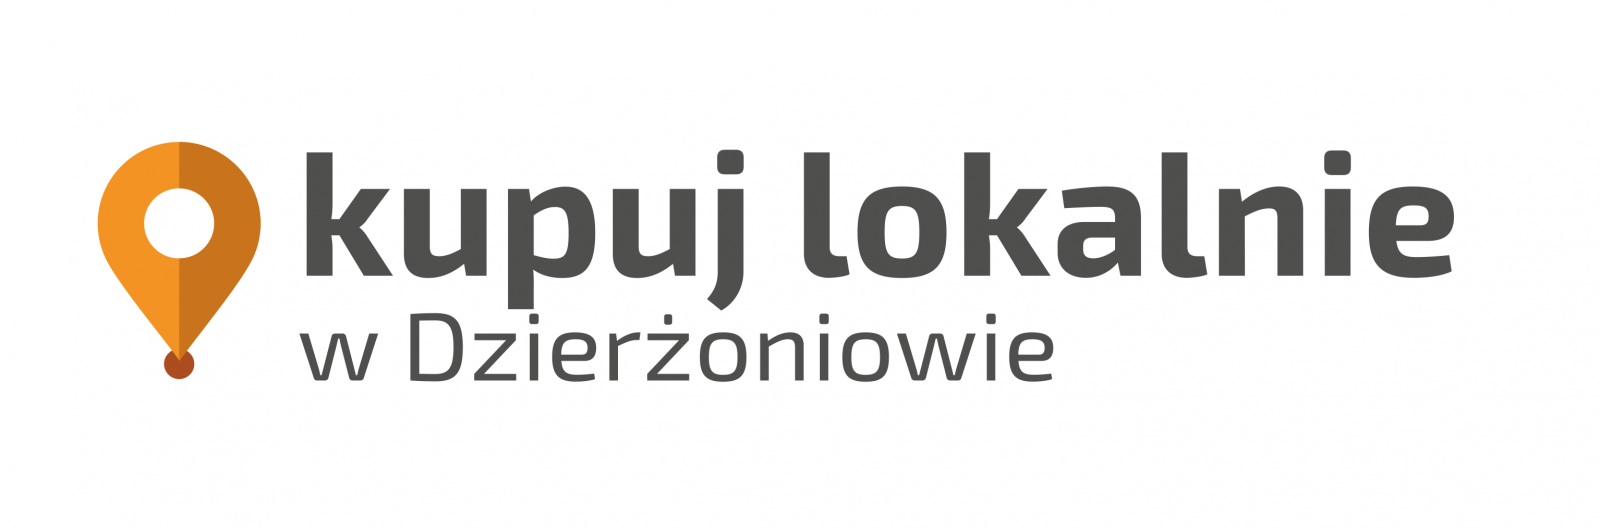 Logo kampanii Kupuj Loklanie w Dzierżoniowie 